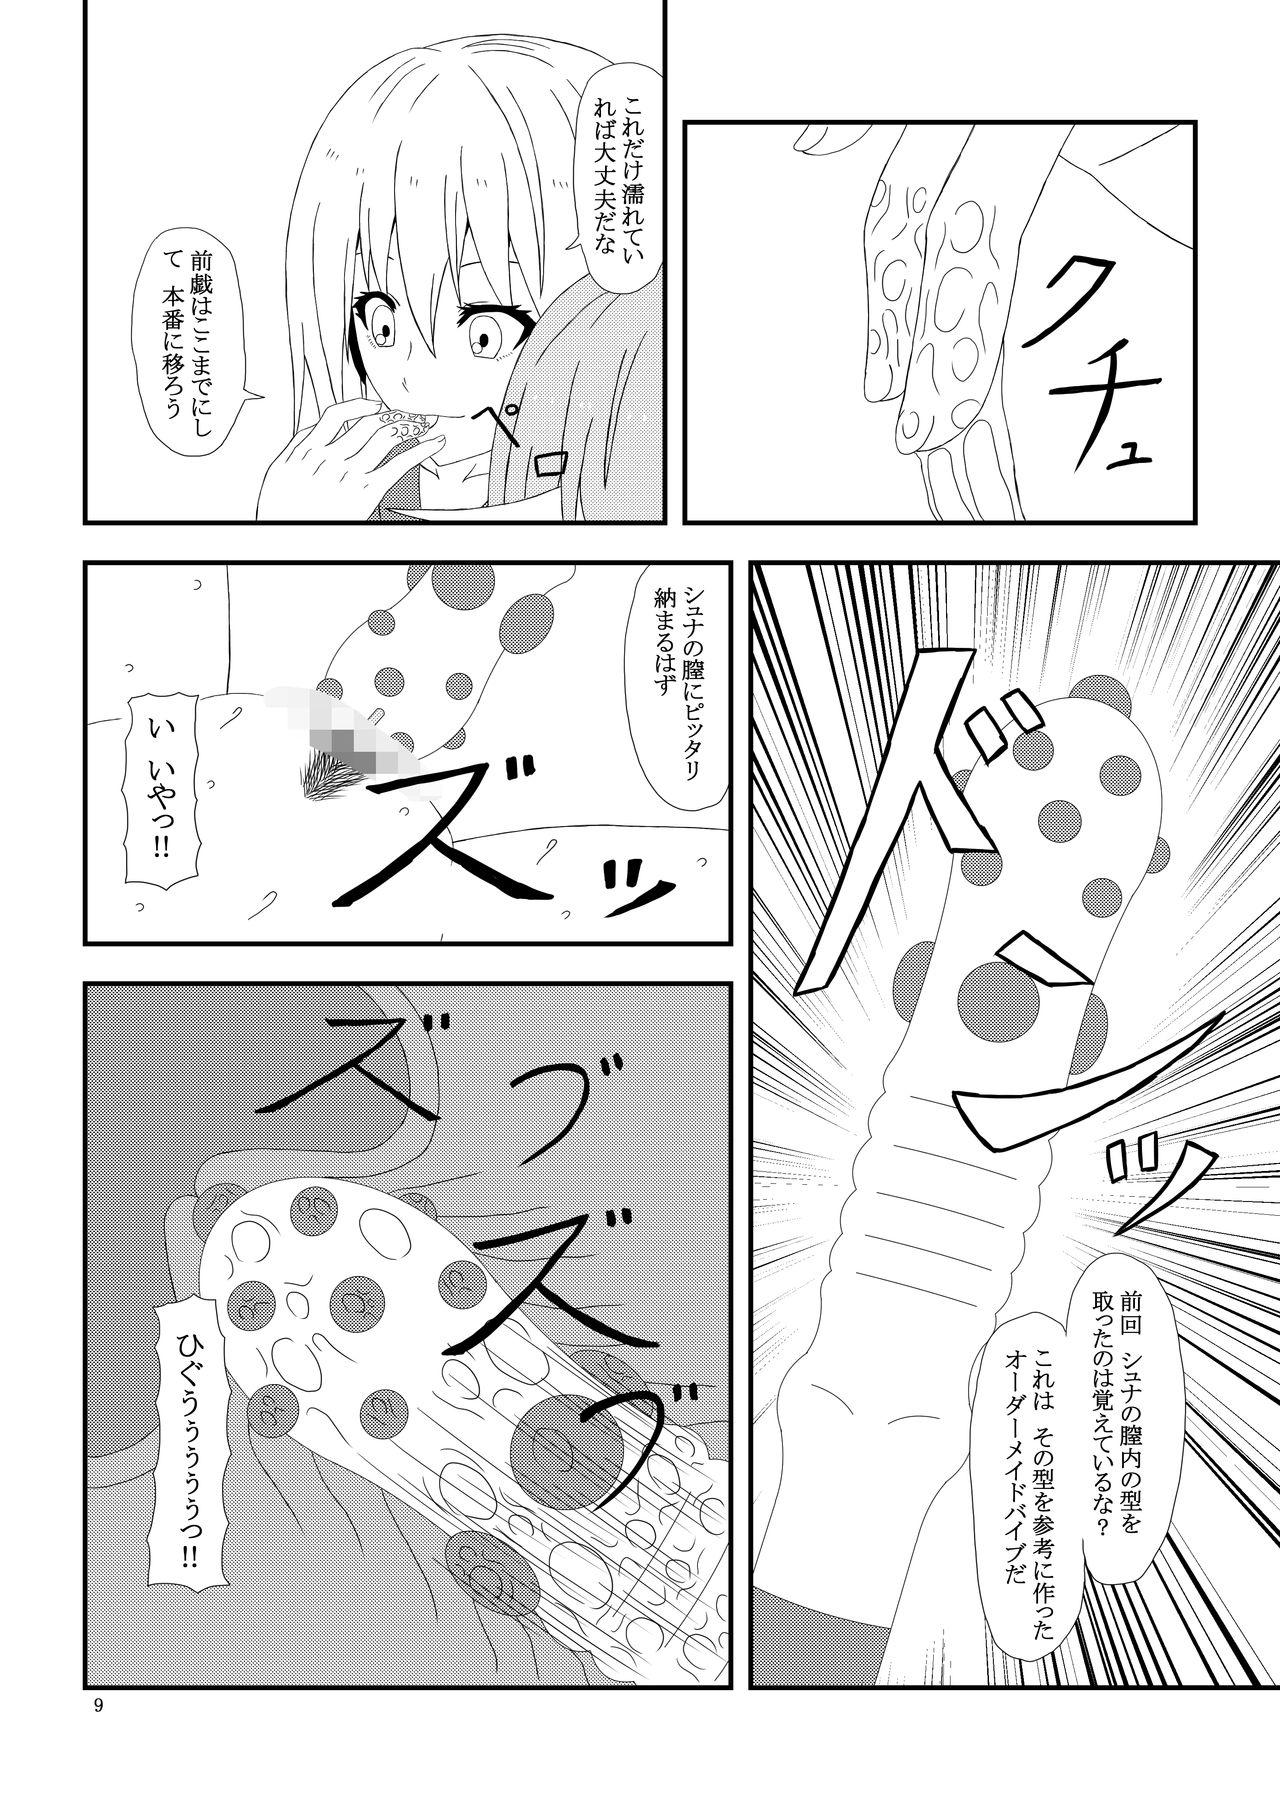 Spying Otona no TenSli - Tensei shitara slime datta ken France - Page 10